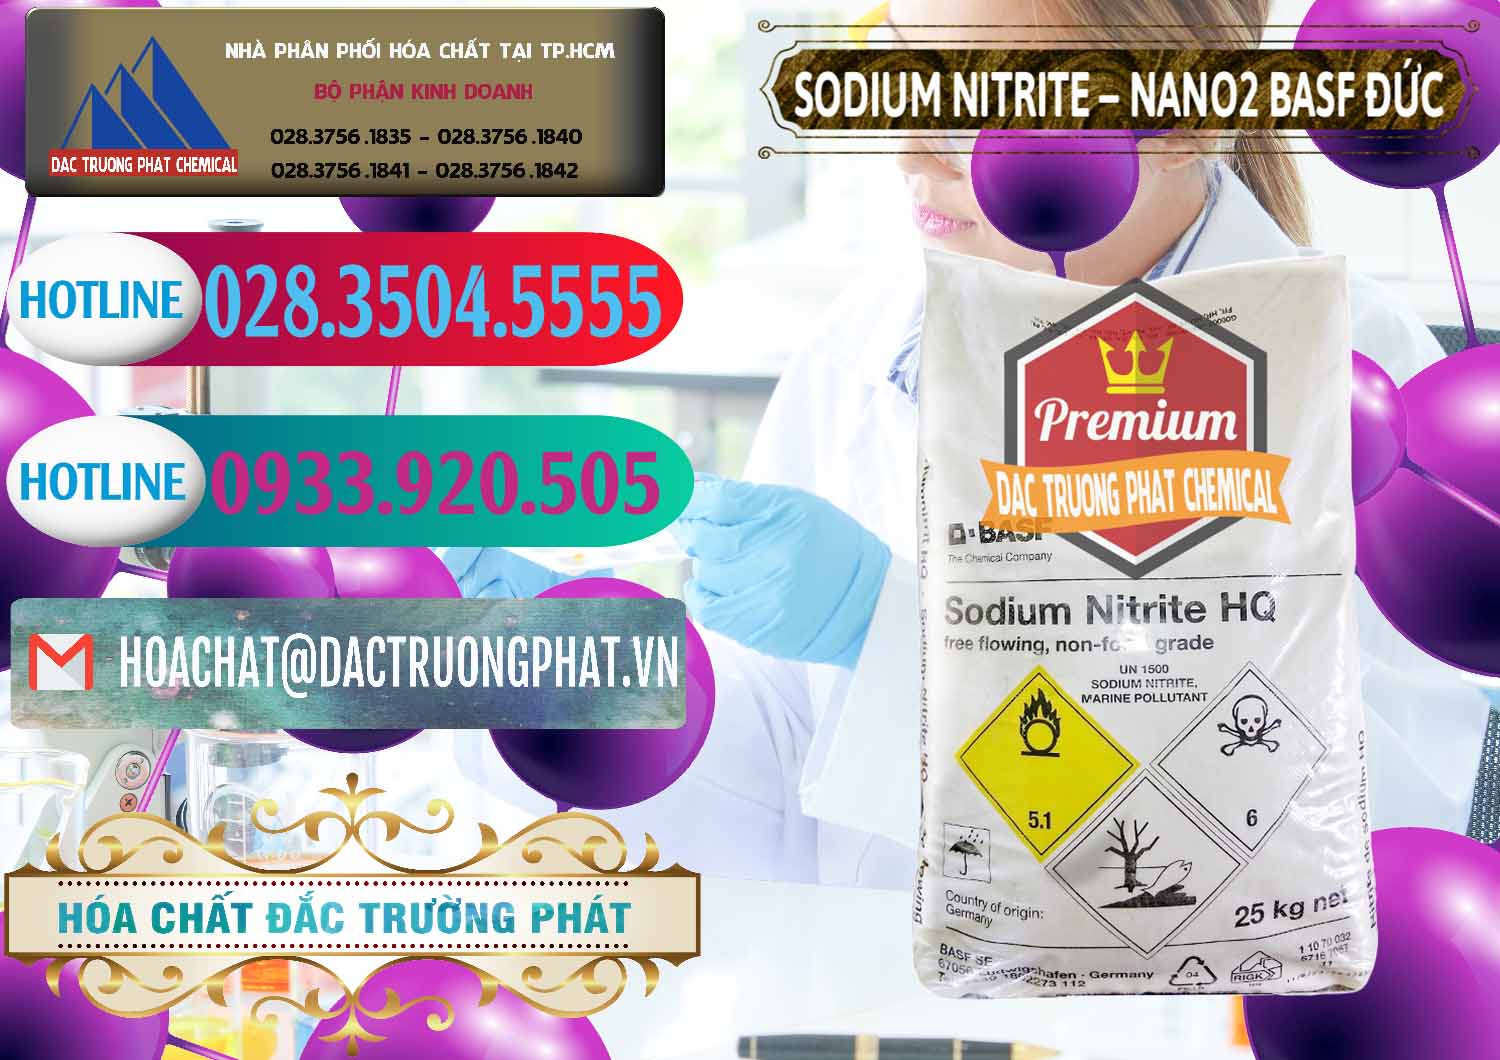 Bán và cung ứng Sodium Nitrite - NANO2 Đức BASF Germany - 0148 - Đơn vị chuyên kinh doanh và cung cấp hóa chất tại TP.HCM - truongphat.vn